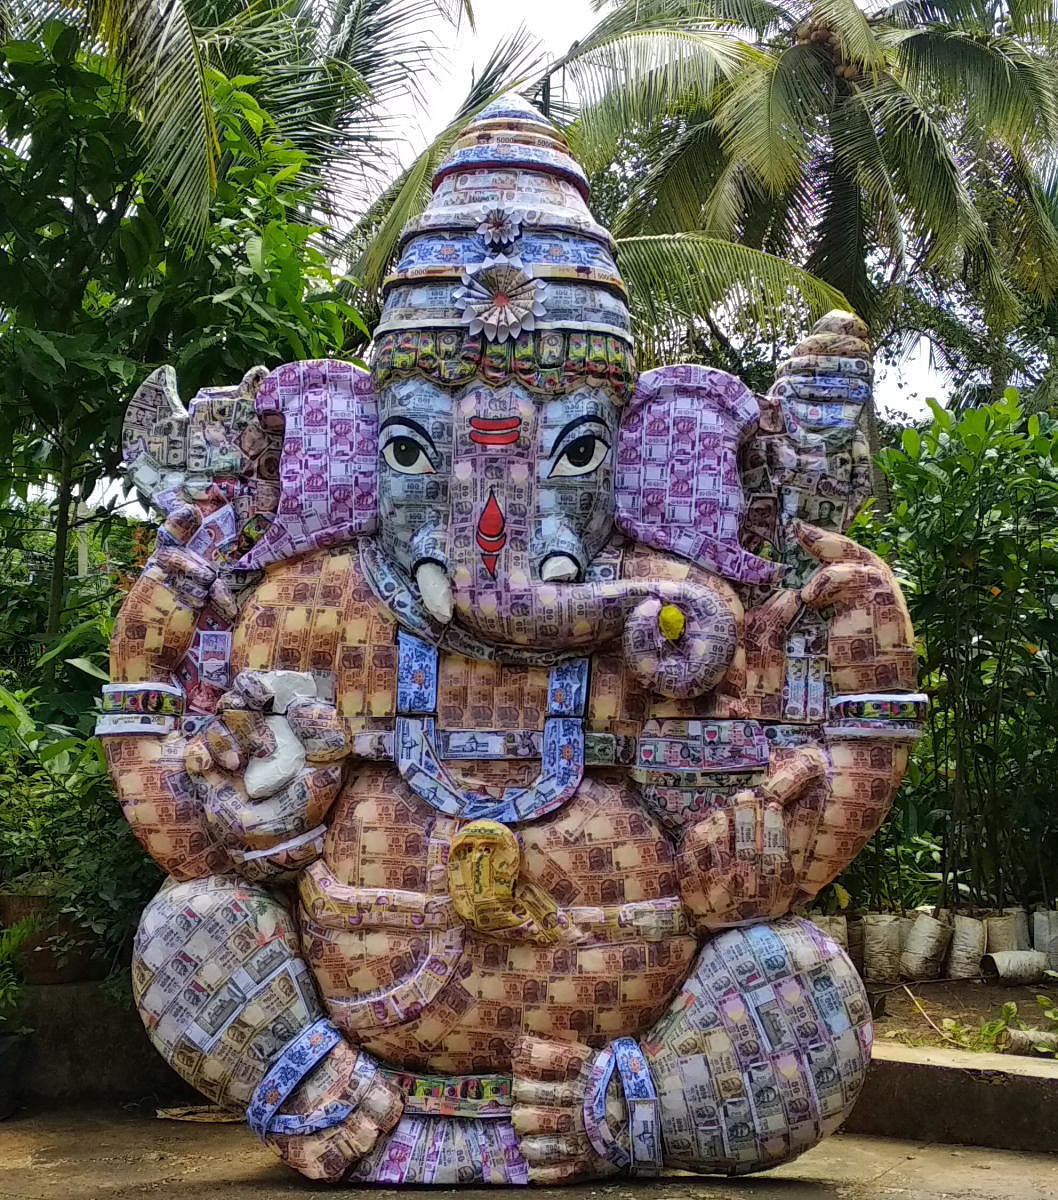 A Ganesha idol made from artificial currencies of 21 countries displayed at Sai Radha Motors on Vidya Samudra Road, Udupi.